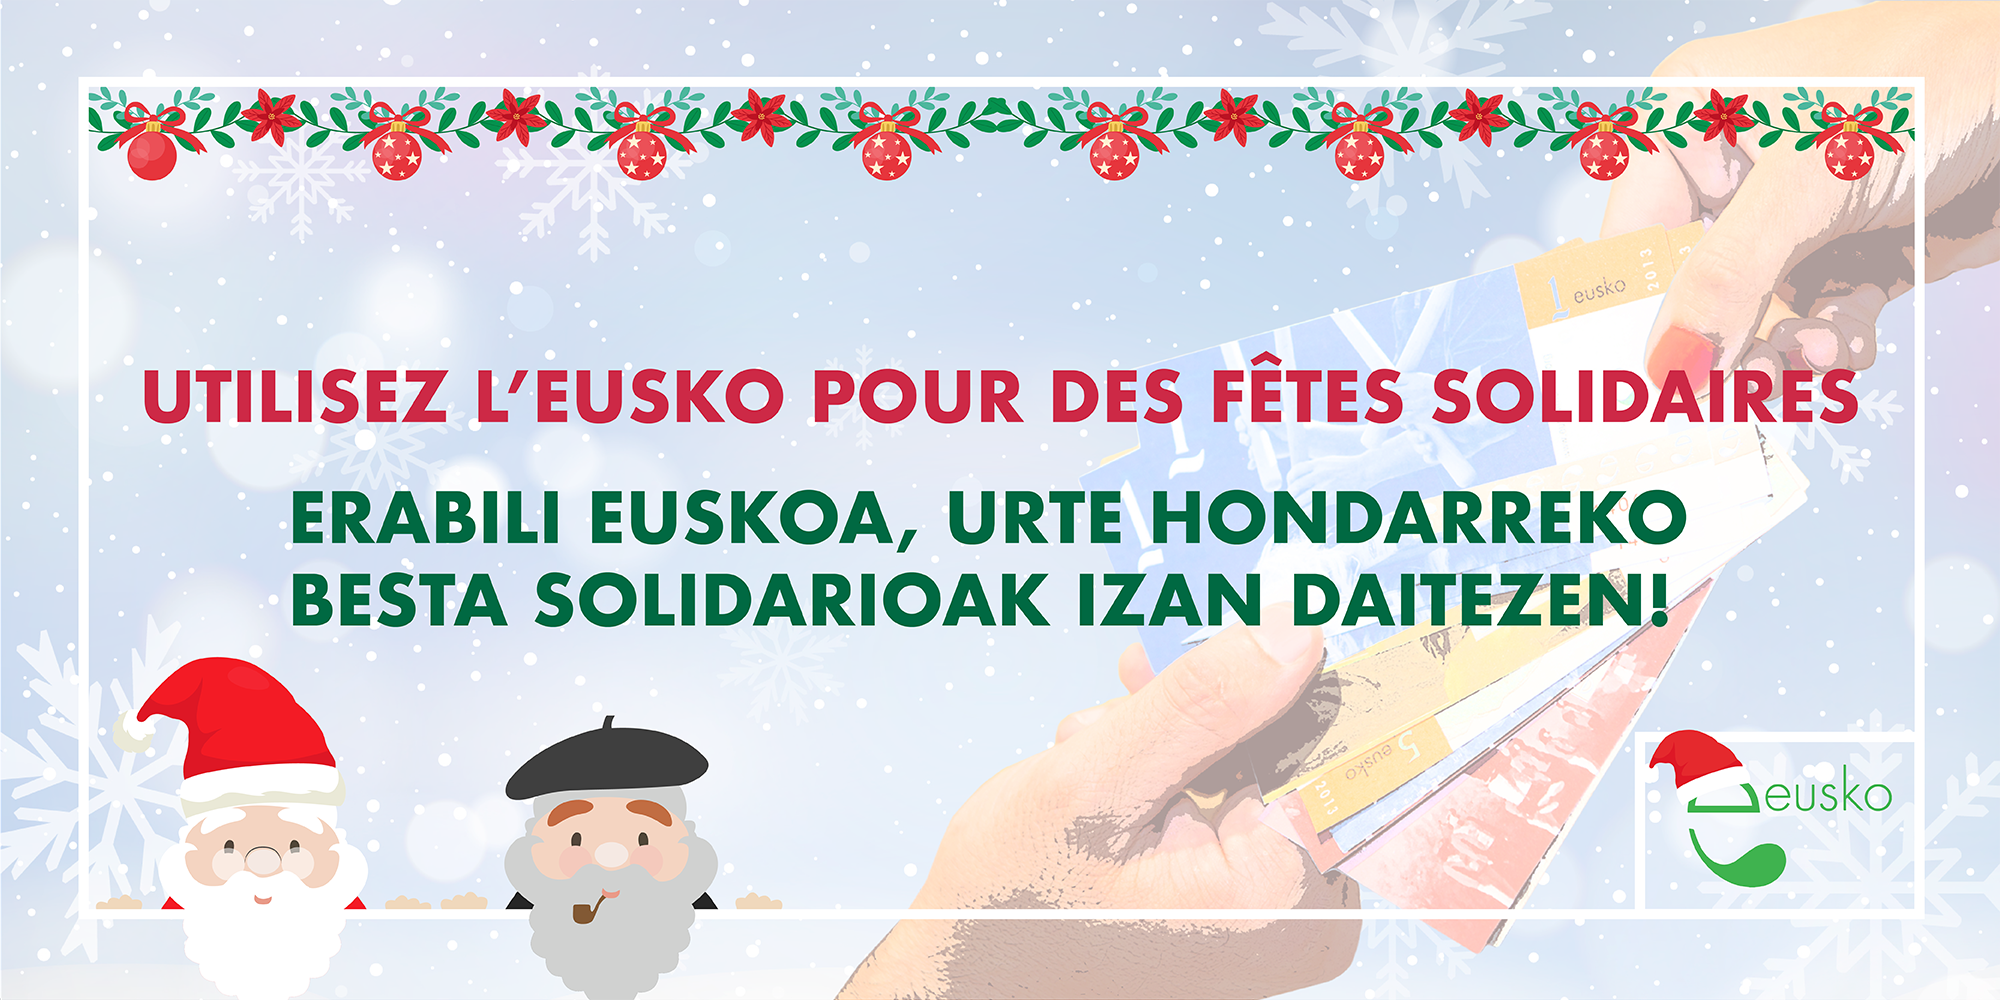 Utilisez l’eusko pour des fêtes solidaires !